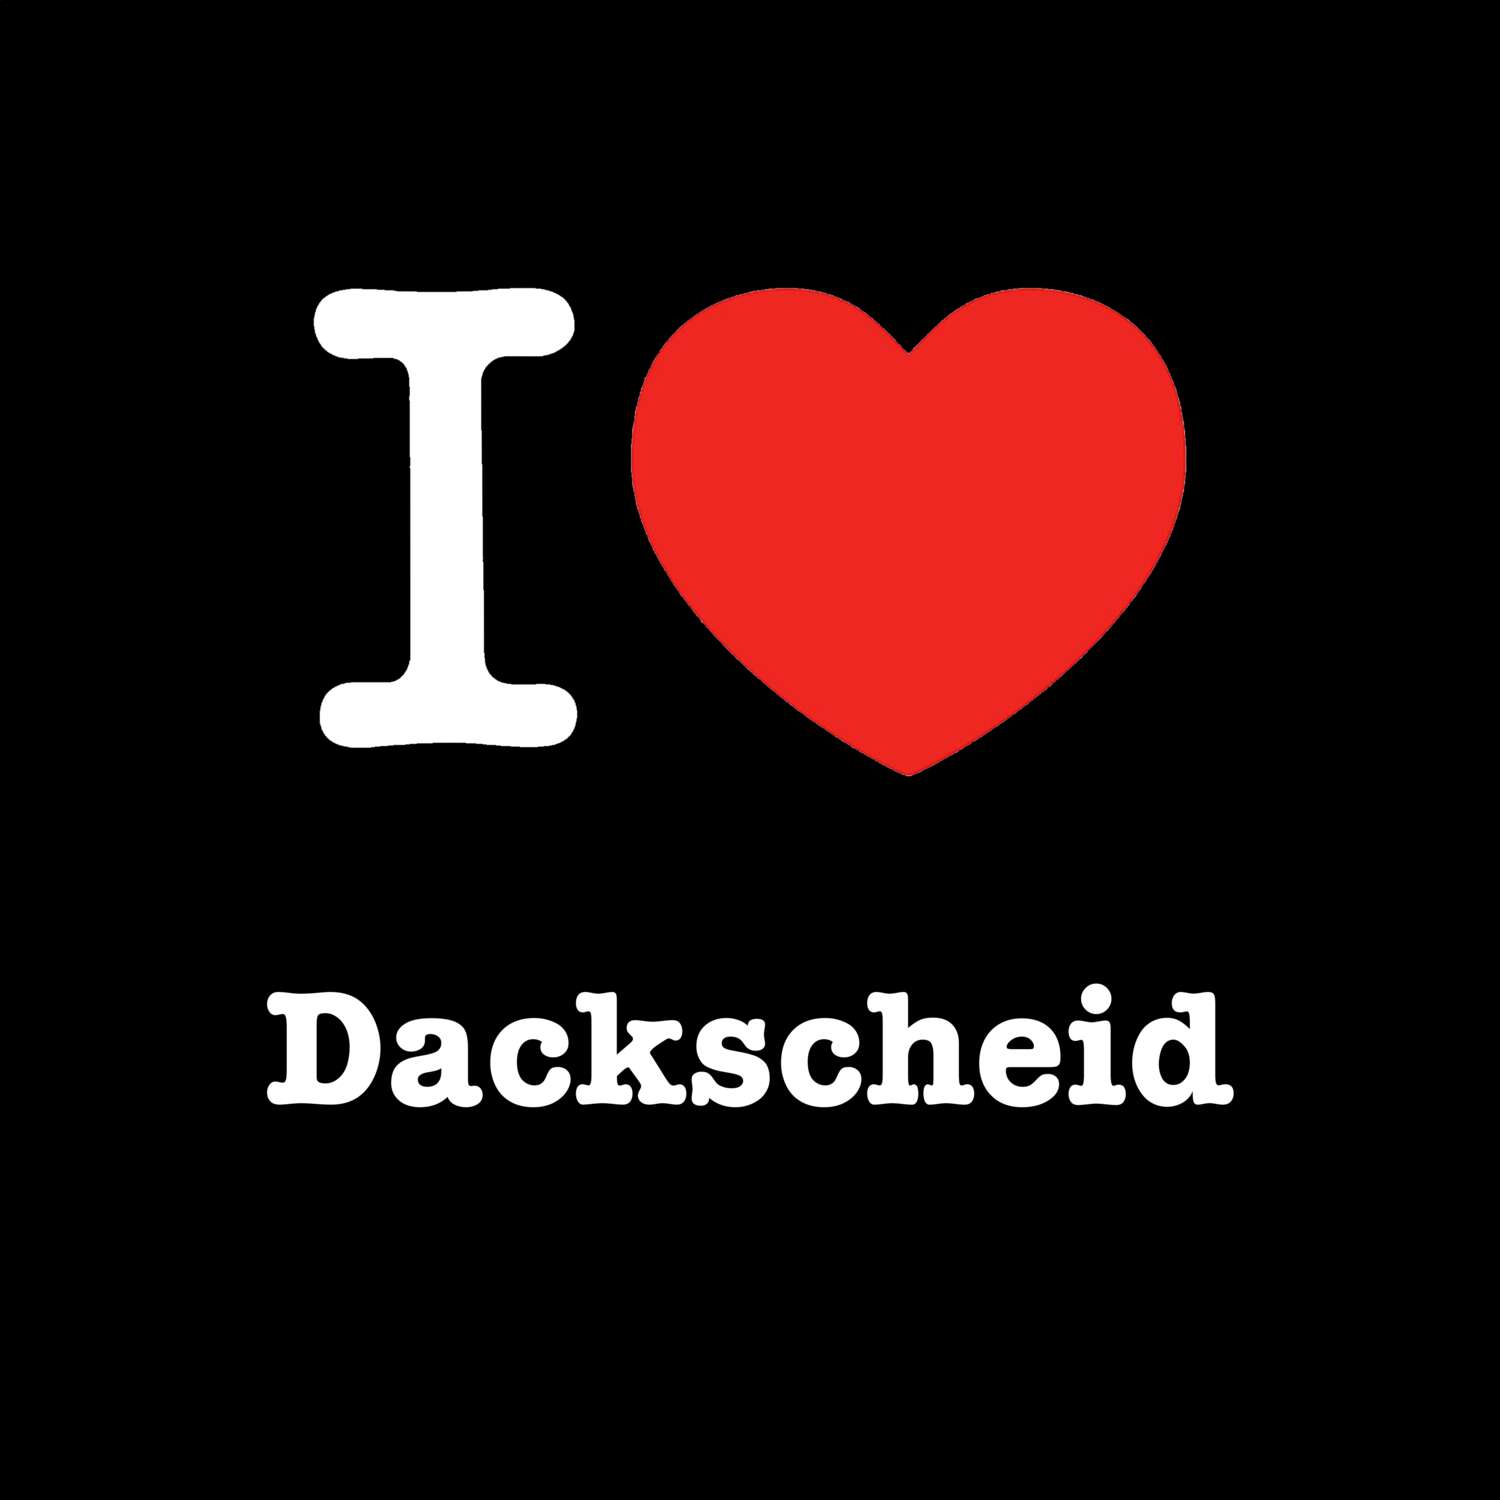 Dackscheid T-Shirt »I love«